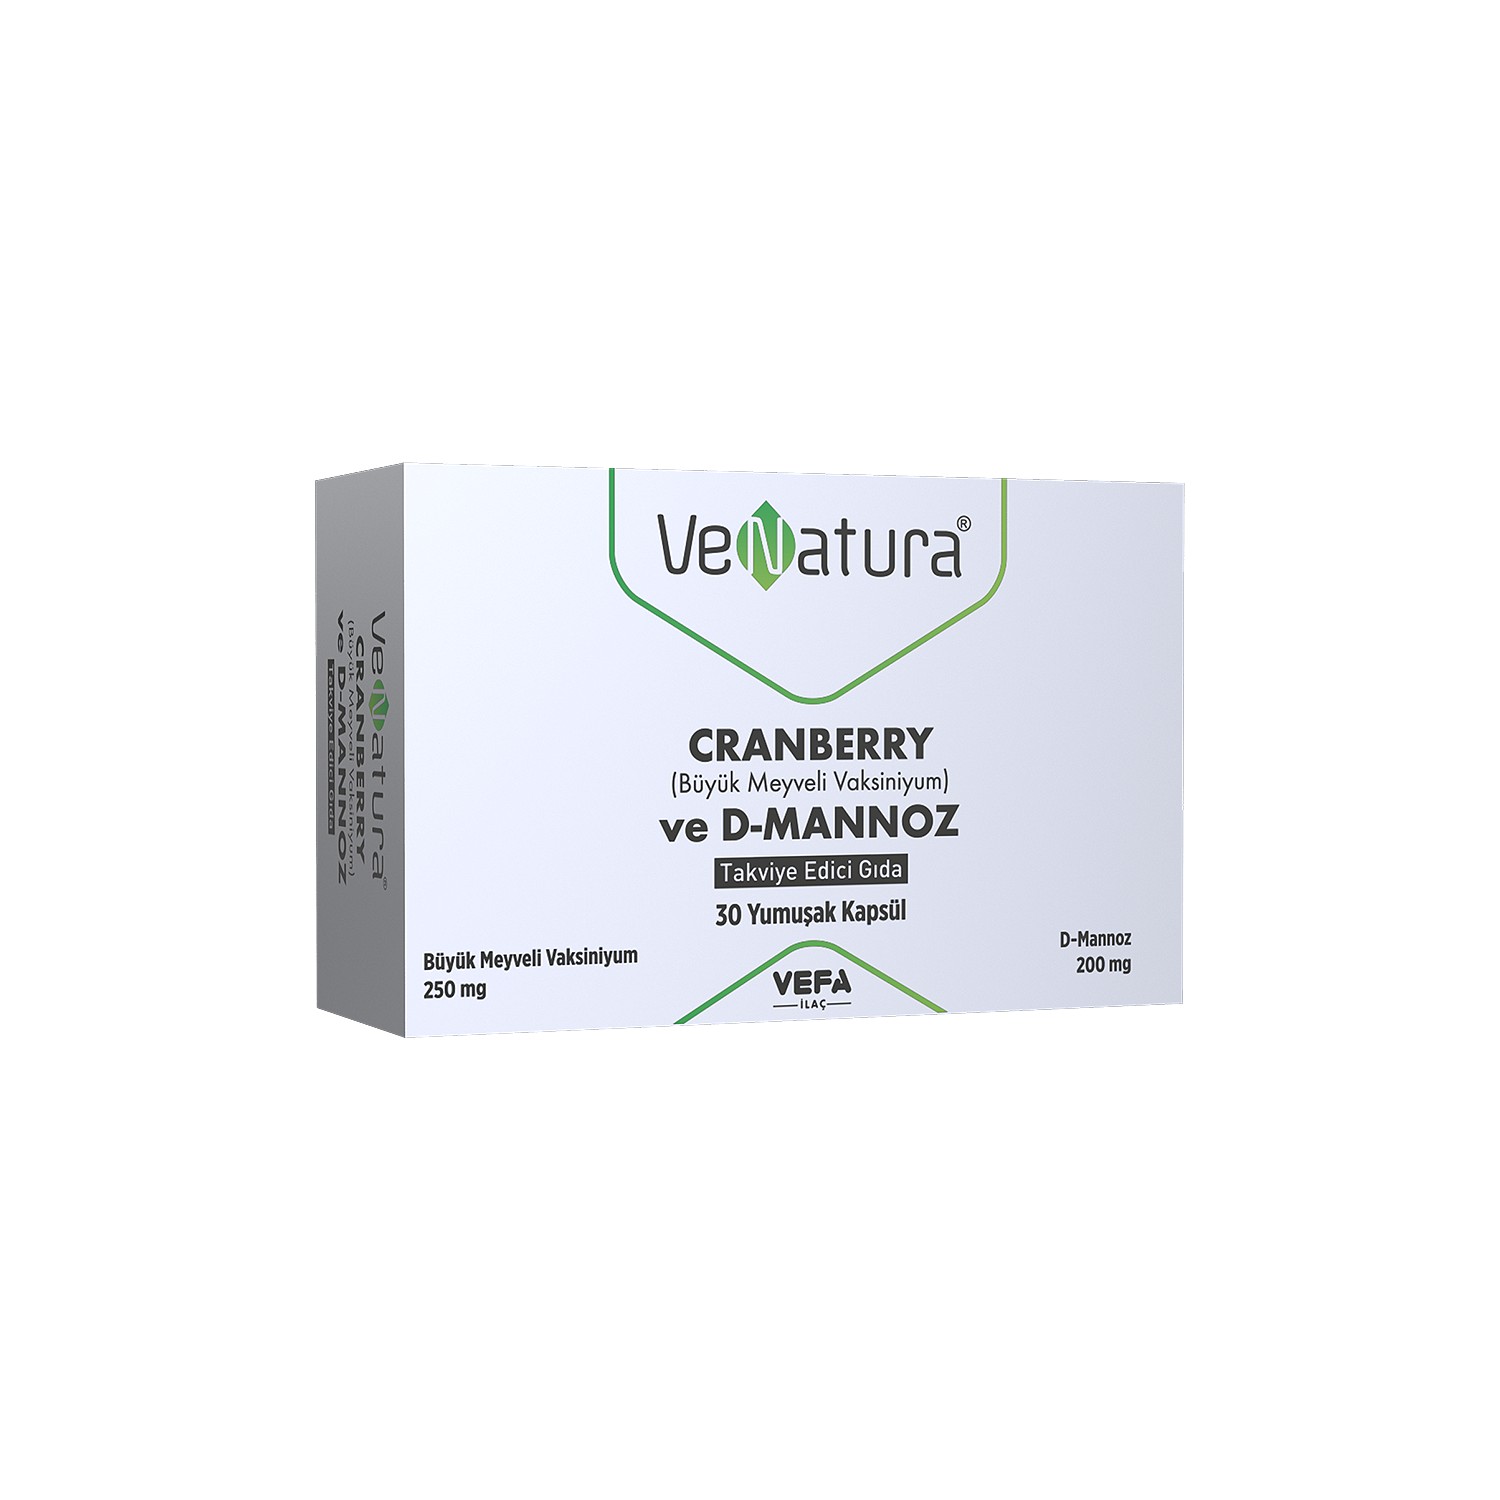 Пищевая добавка Venatura Cranberry ve D-Mannoz, 30 капсул желатин пищевой 15 г спецаромат